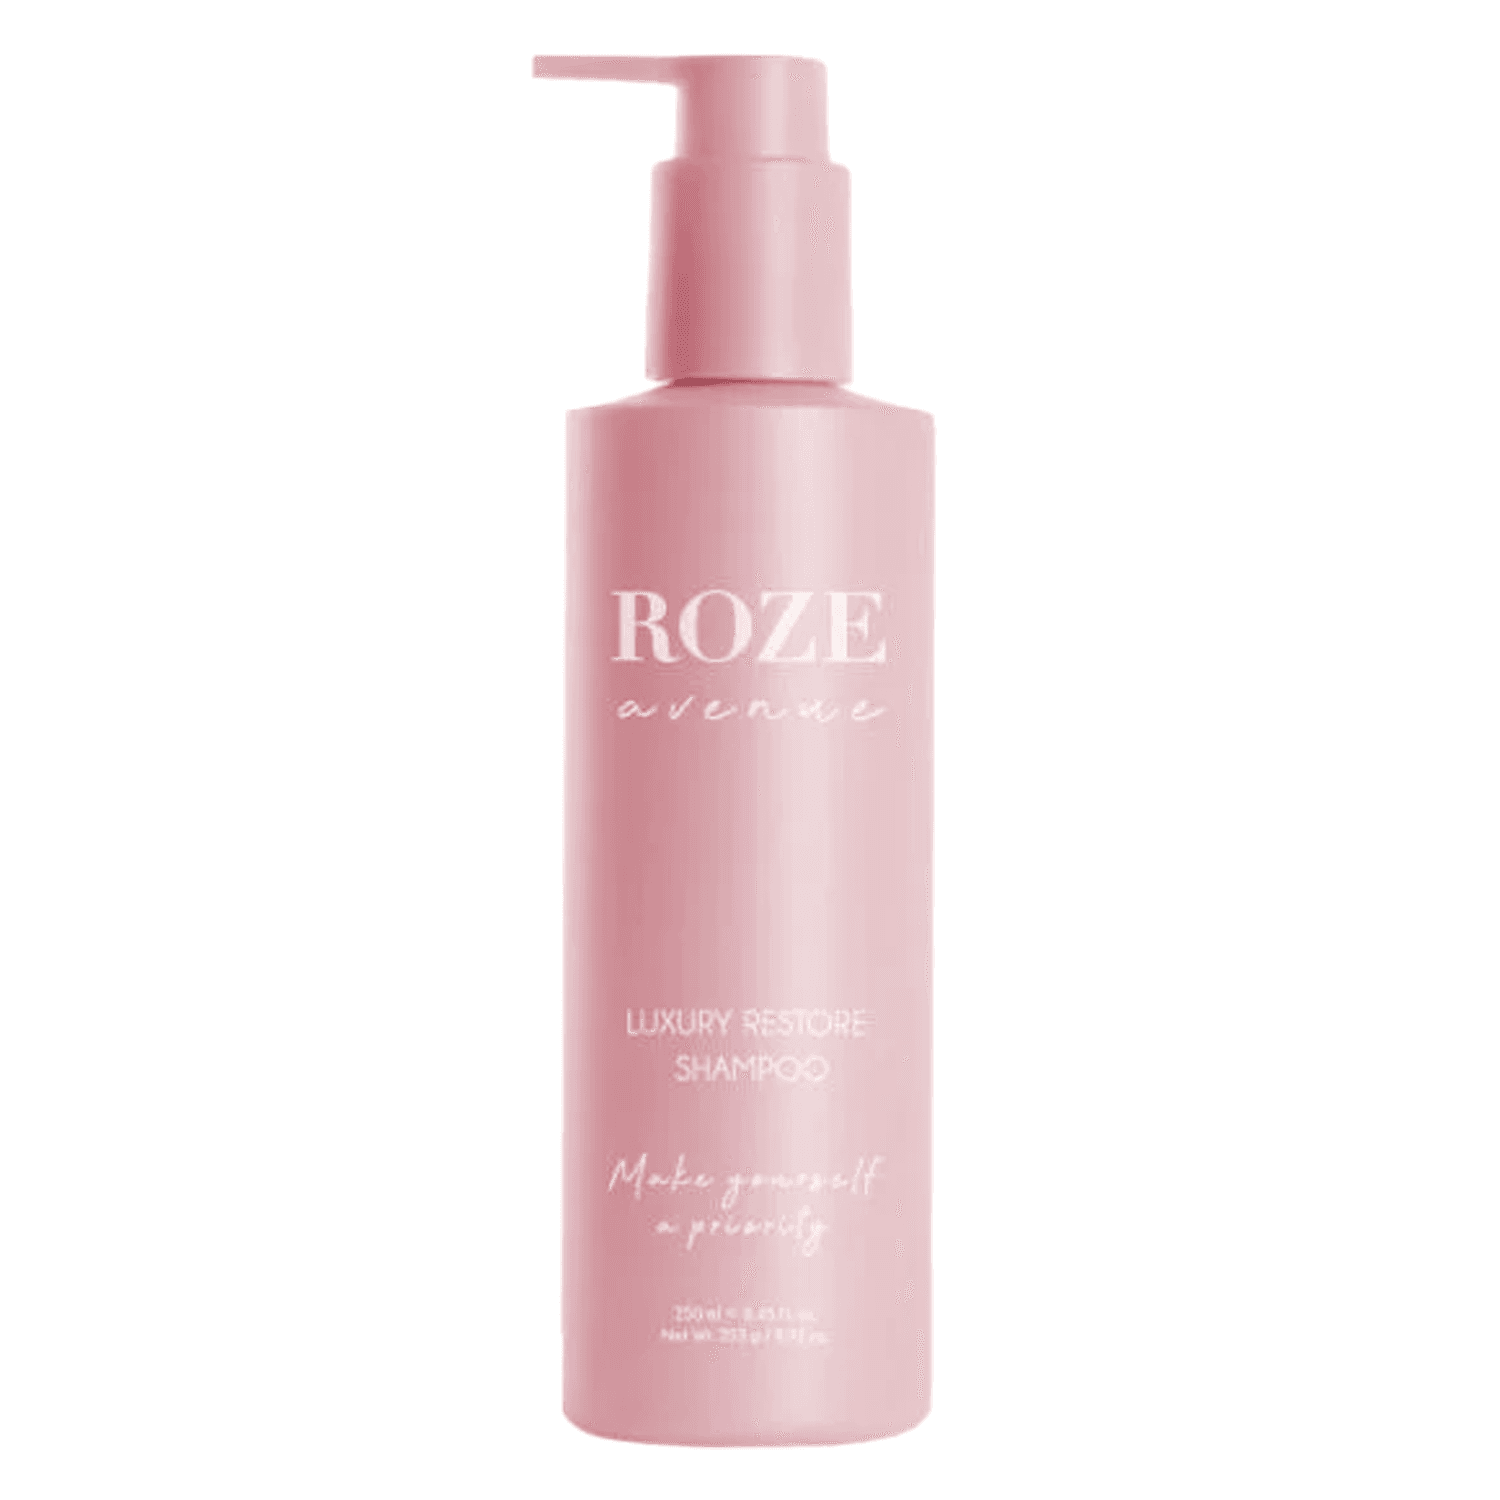 ROZE avenue - Luxury Restore Shampoo